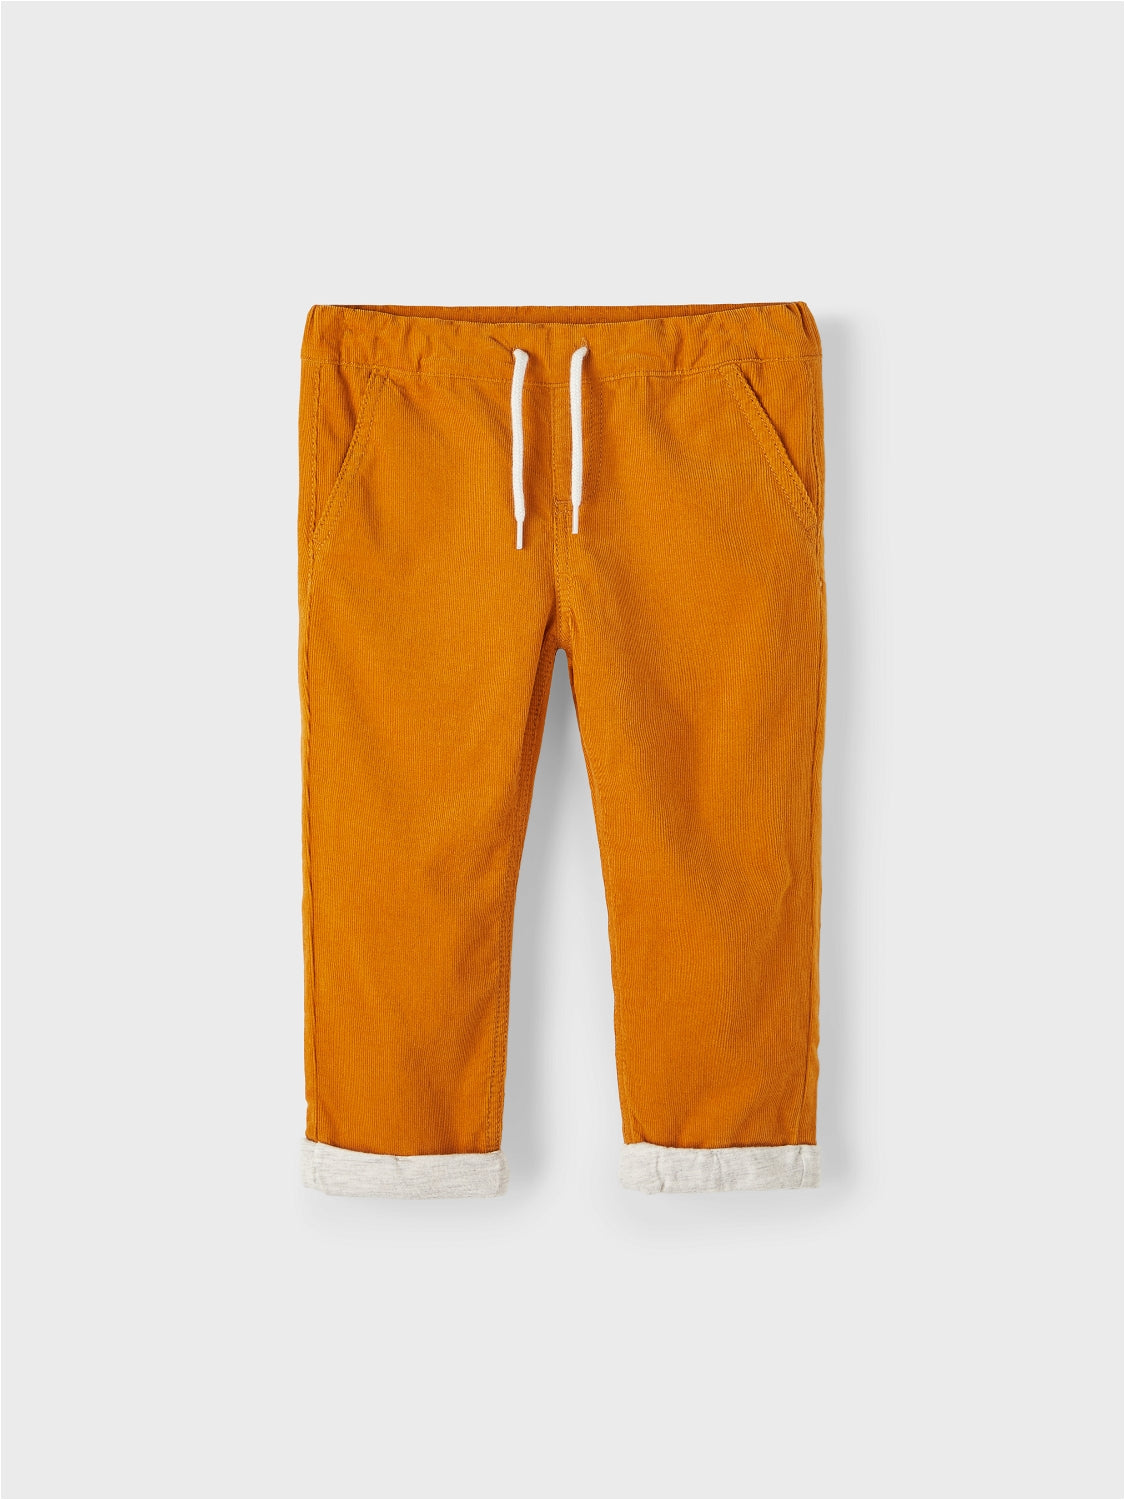 Pantalone Velluto Arancione